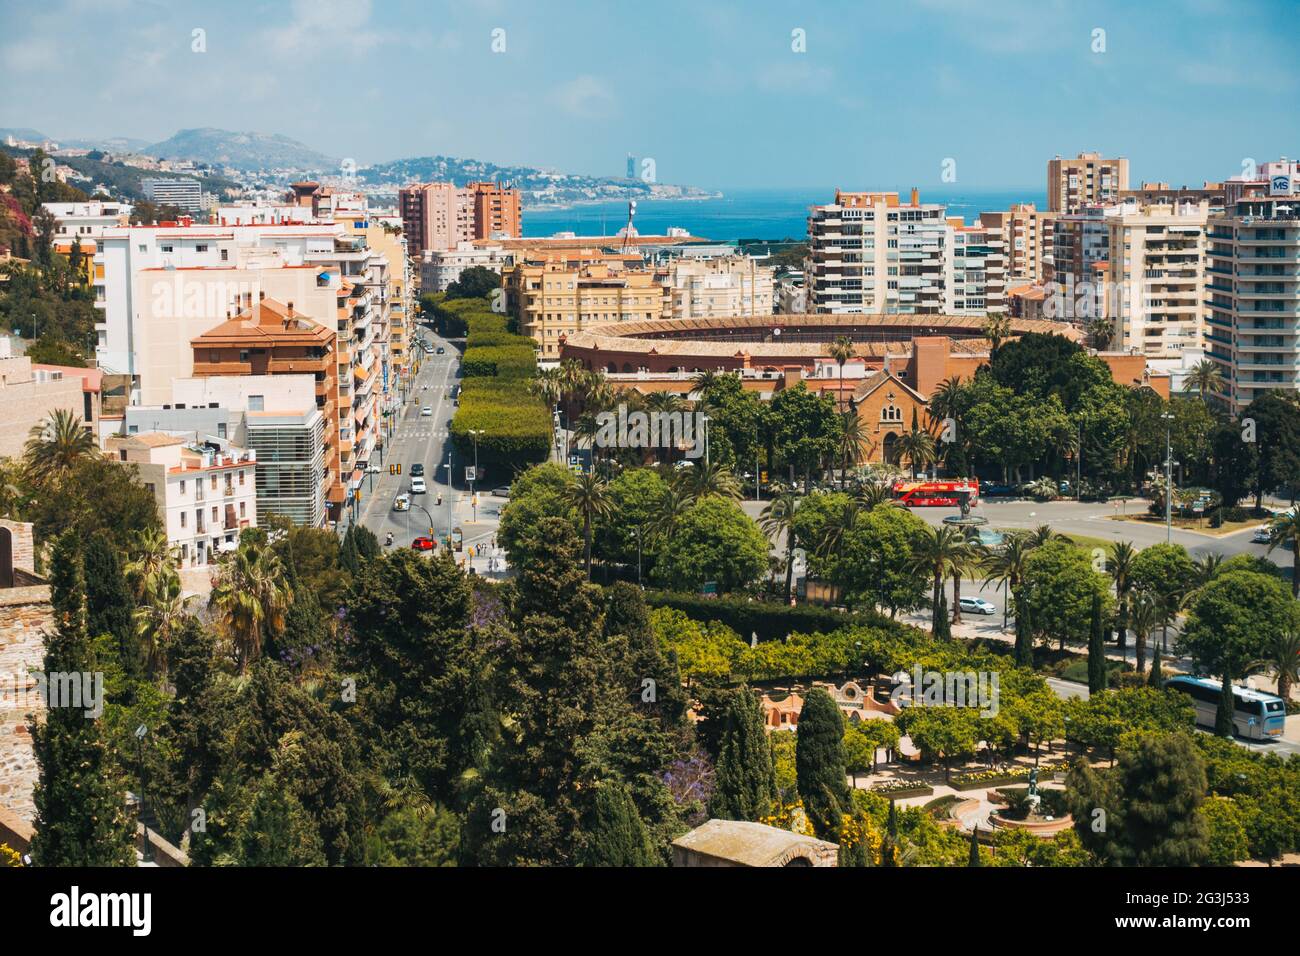 Blick auf die Stierkampfarena, die Hochhäuser und die von Bäumen gesäumten Straßen des Strandviertels La Malagueta in der Stadt Málaga, Spanien Stockfoto